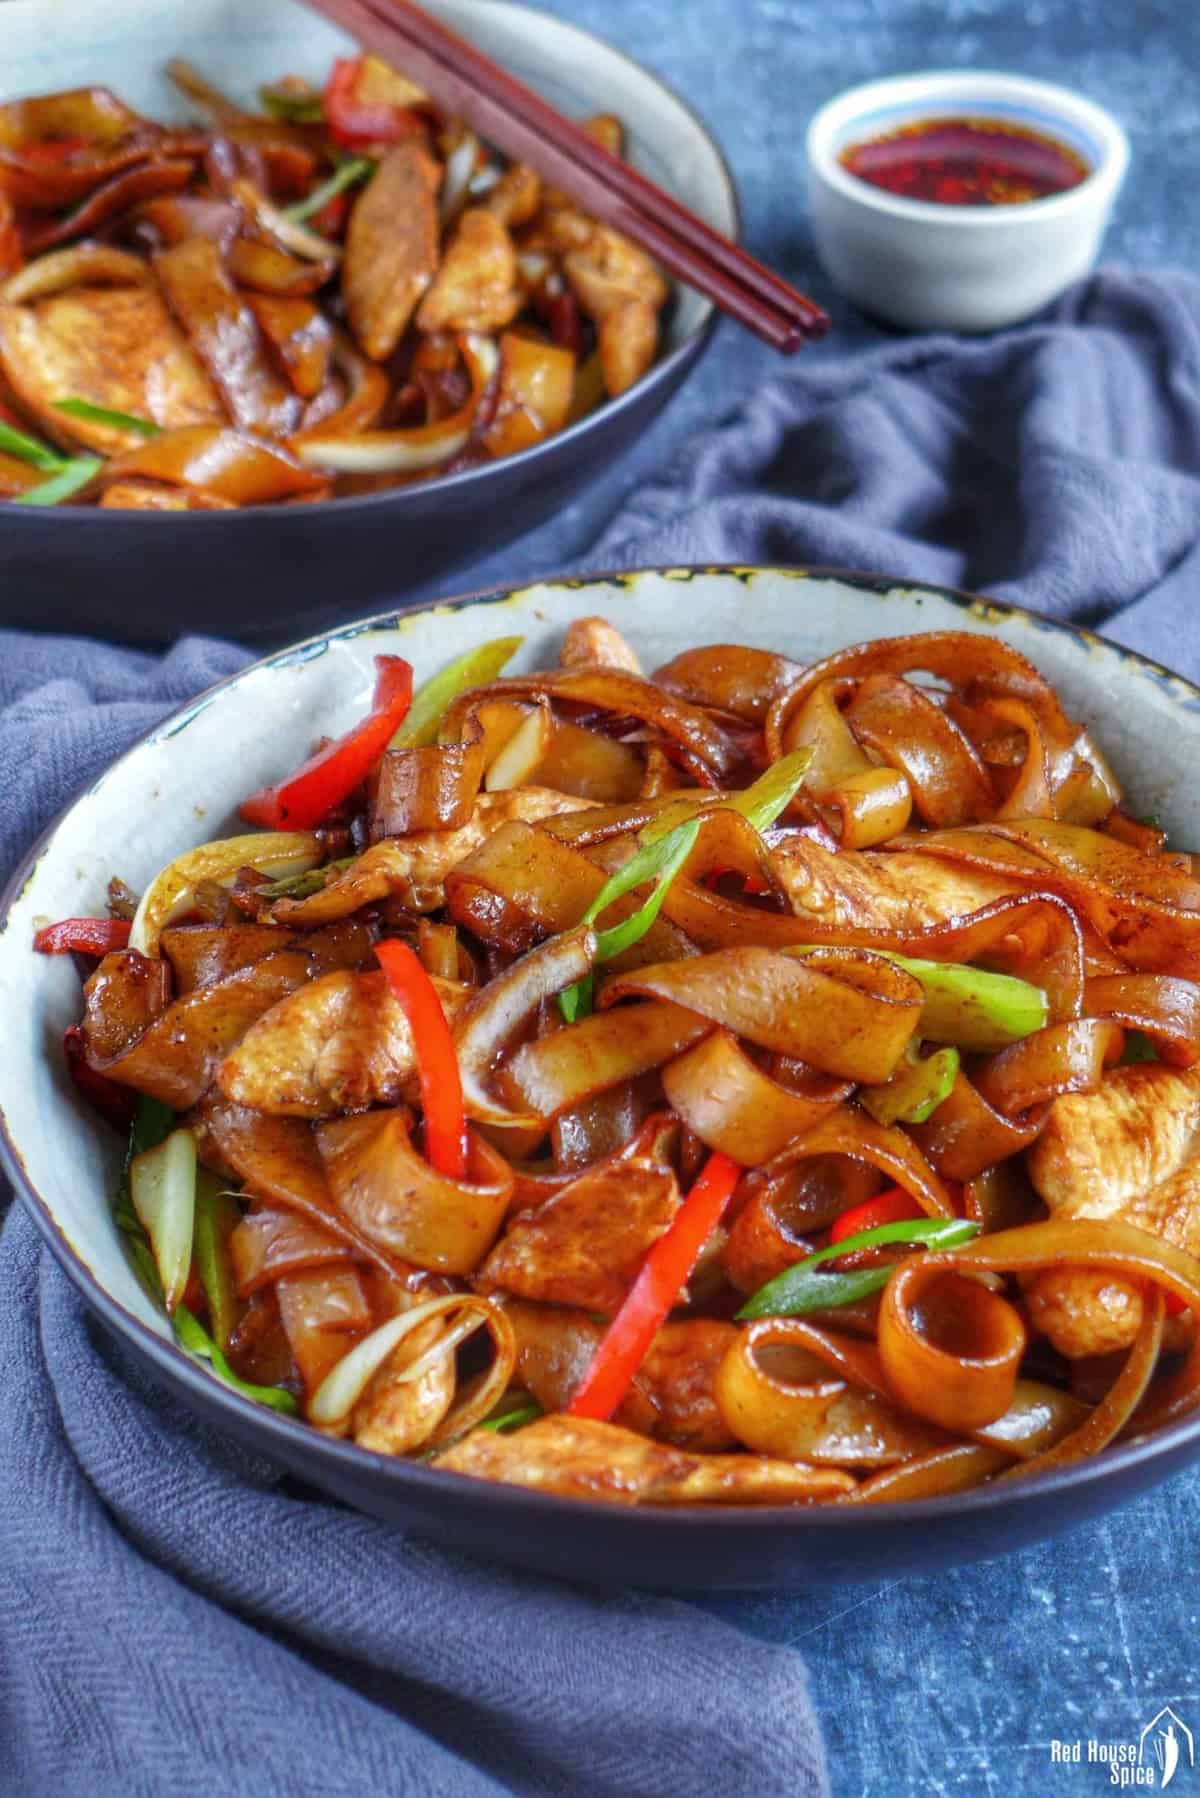 Recette Nouilles chinoises au poulet et sauce soja